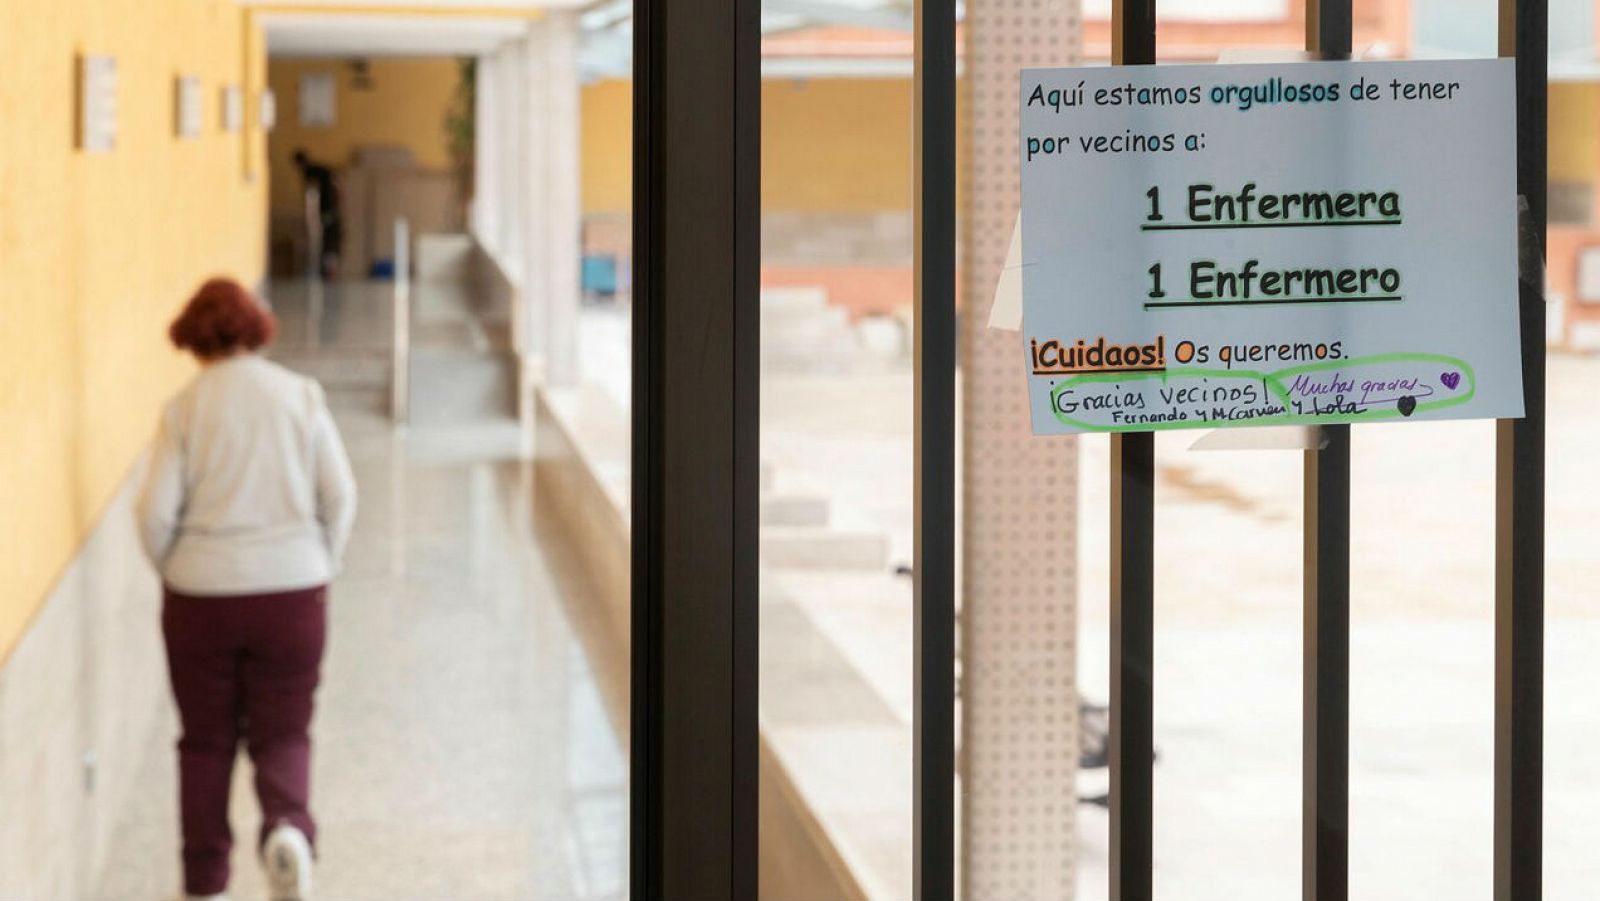 Residentes en un edificio ubicado en el barrio de San Andrés de Murcia han colocado un cartel en la puerta de acceso para mostrar su cariño a dos vecinos que son enfermeros y para pedirles que se cuiden frente a la pandemia del coronavirus.